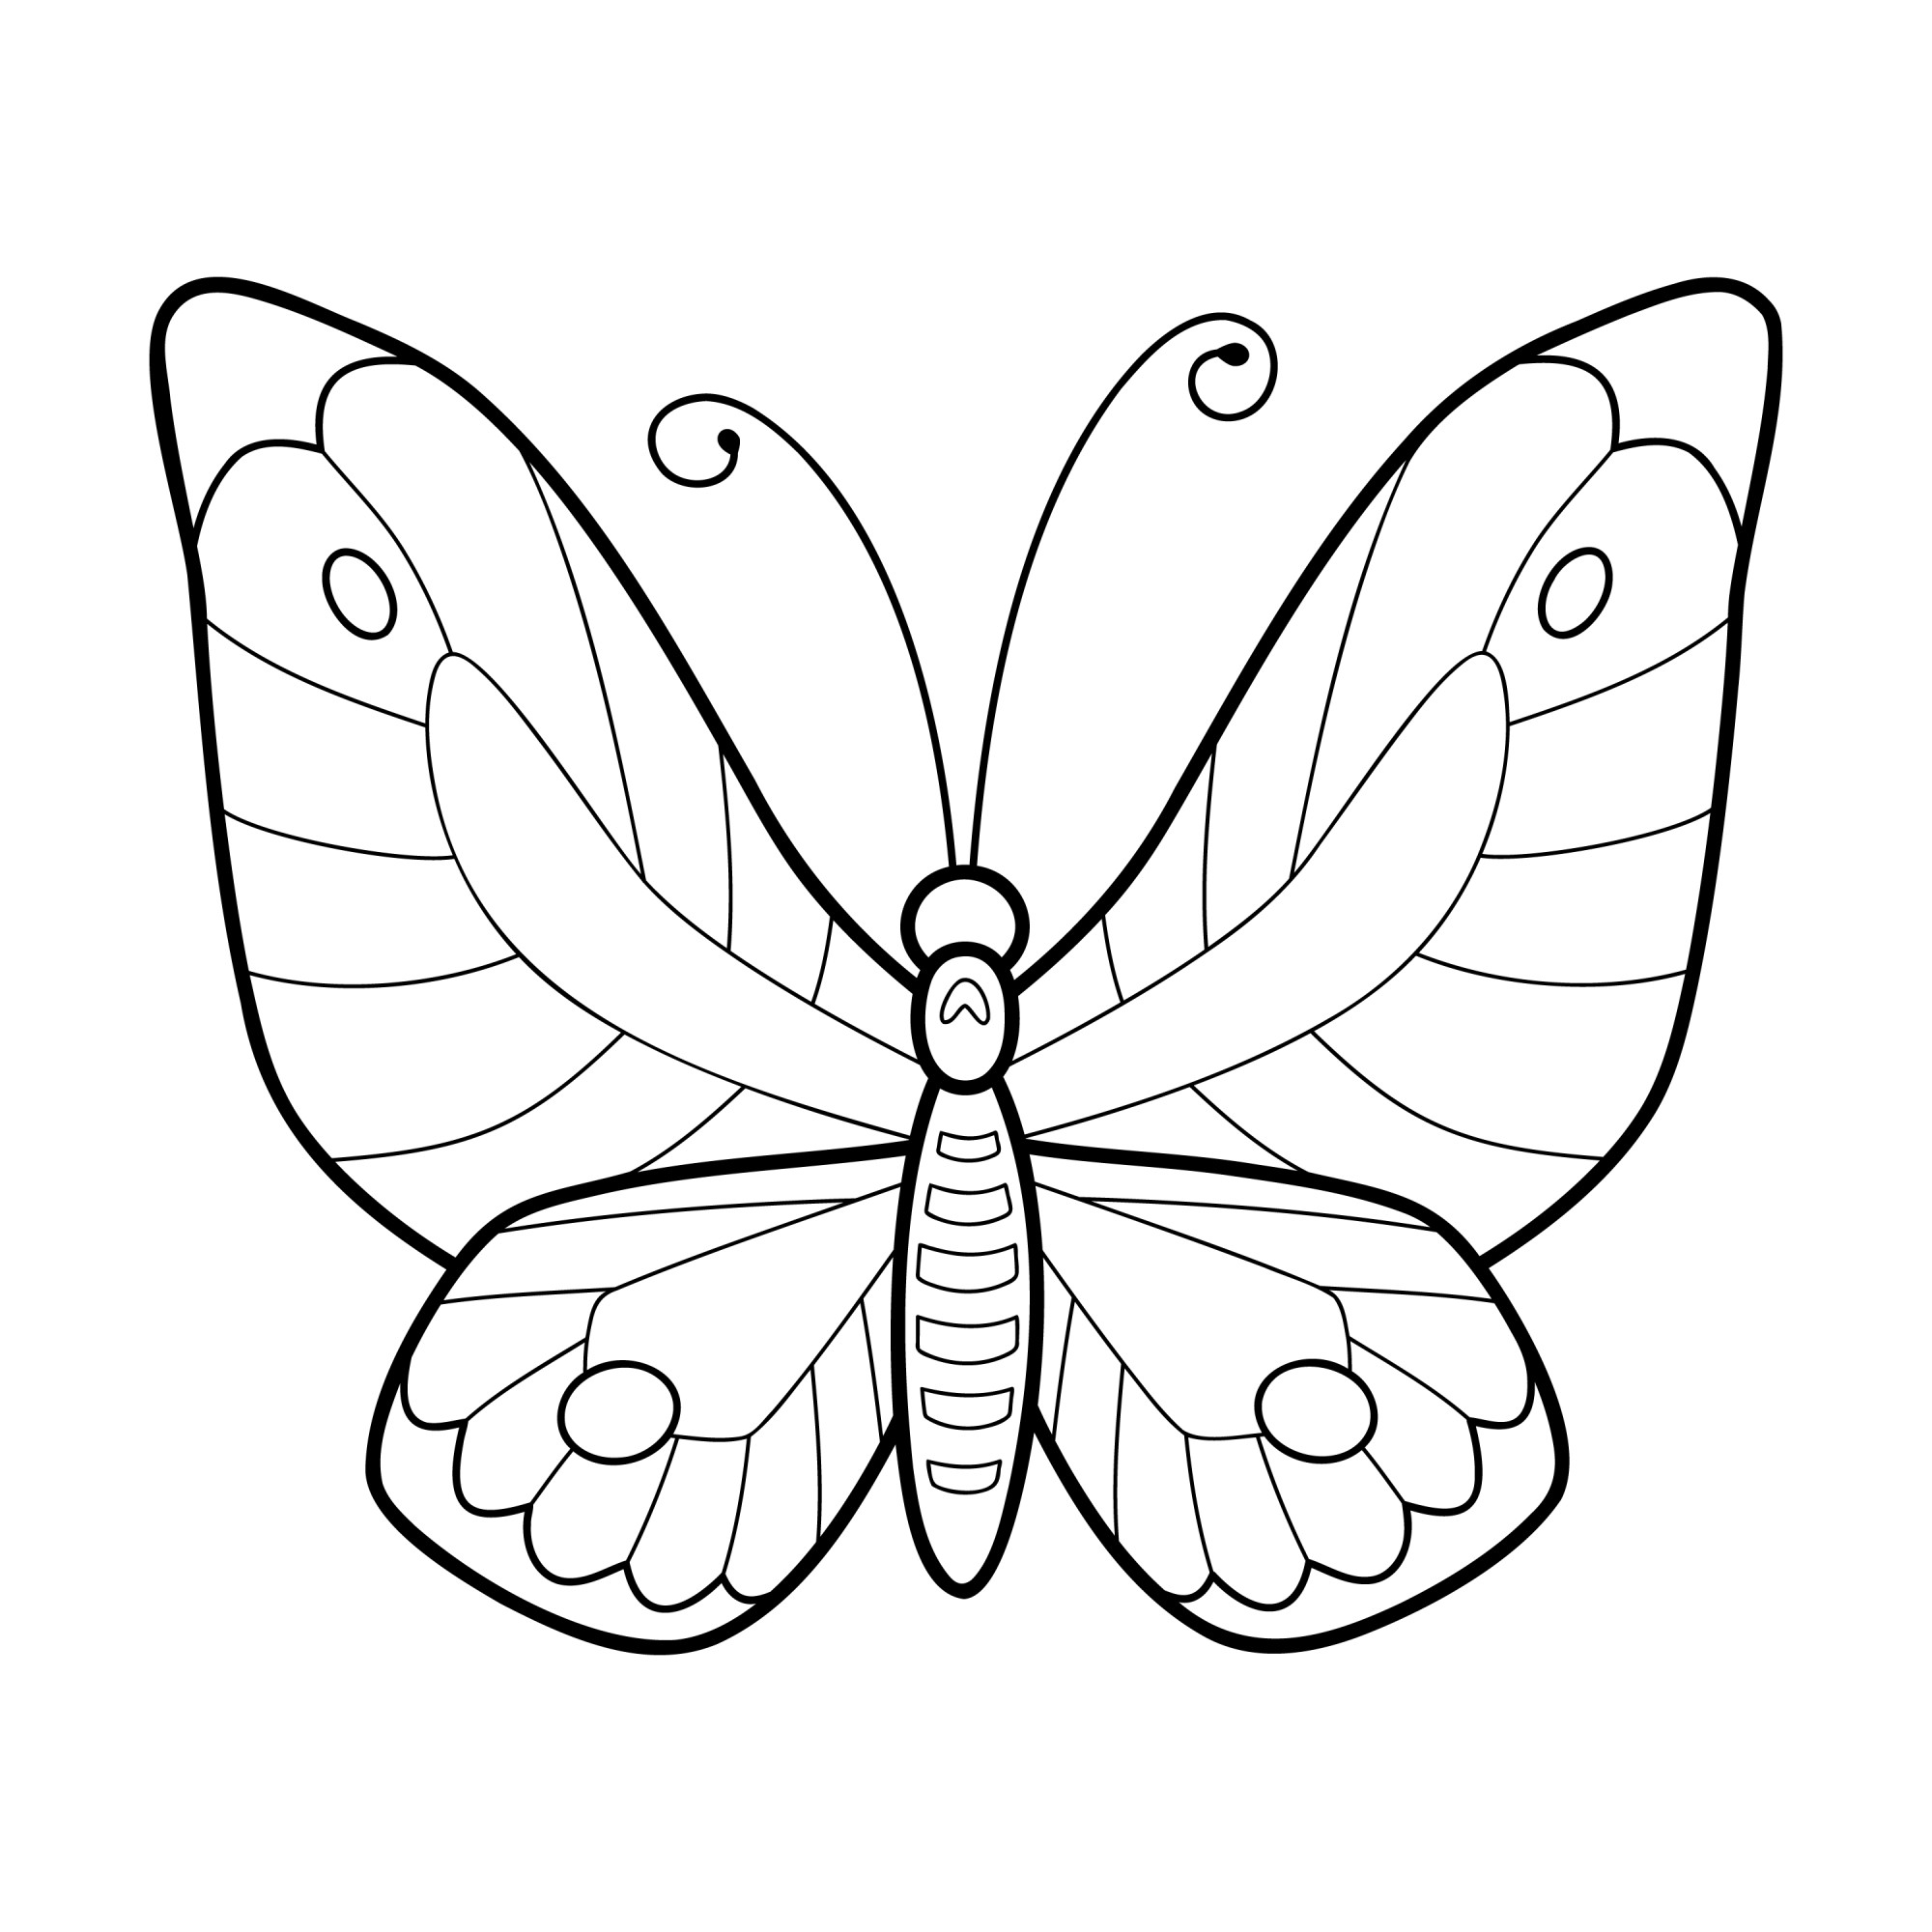 Раскраска для детей: счастливая бабочка